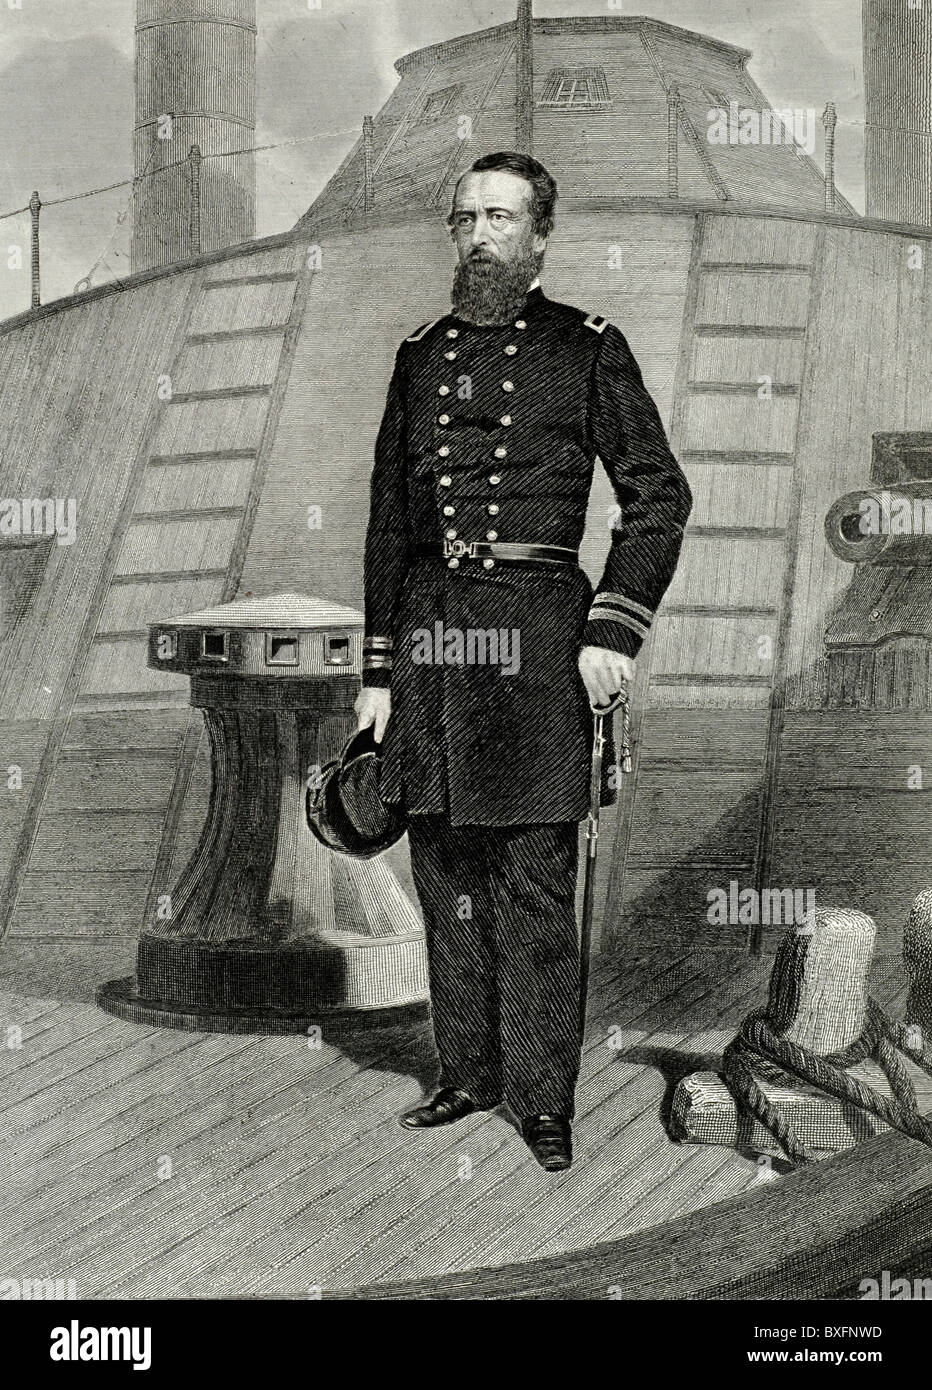 Ganzkörperporträt von David Dixon Porter (1813-1891) Admiral, Navy, Naval Officer und Naval Hero der USA oder der USA während des amerikanischen Bürgerkrieges. Vintage Illustration oder Gravur Stockfoto